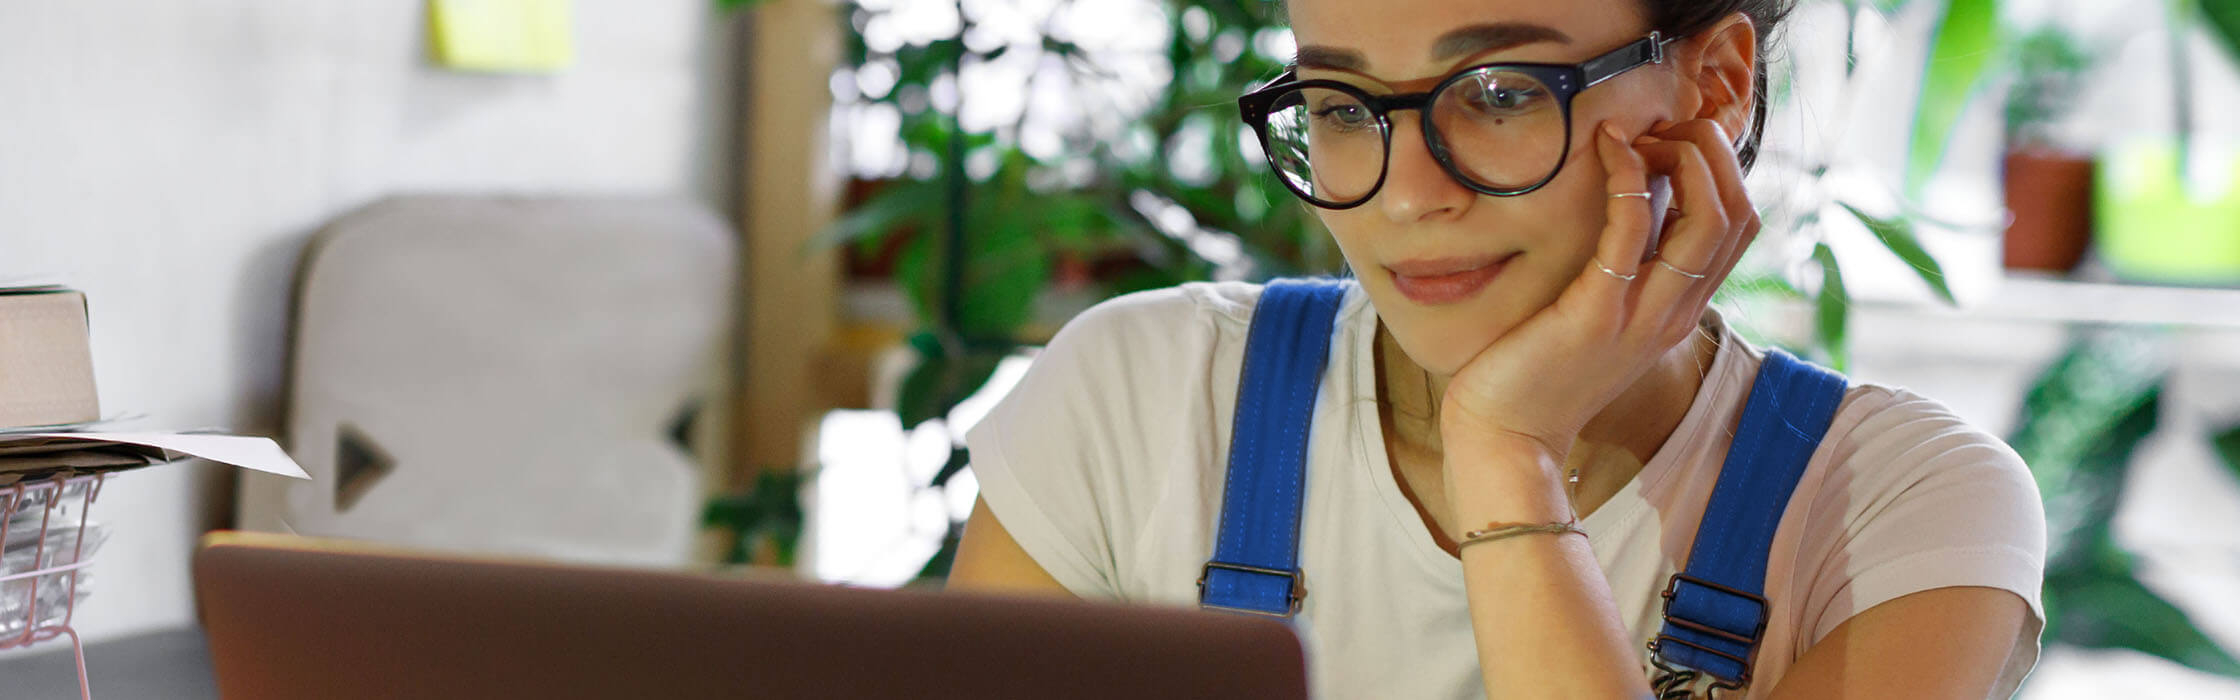 Chica con gafas trabajando con el ordenador